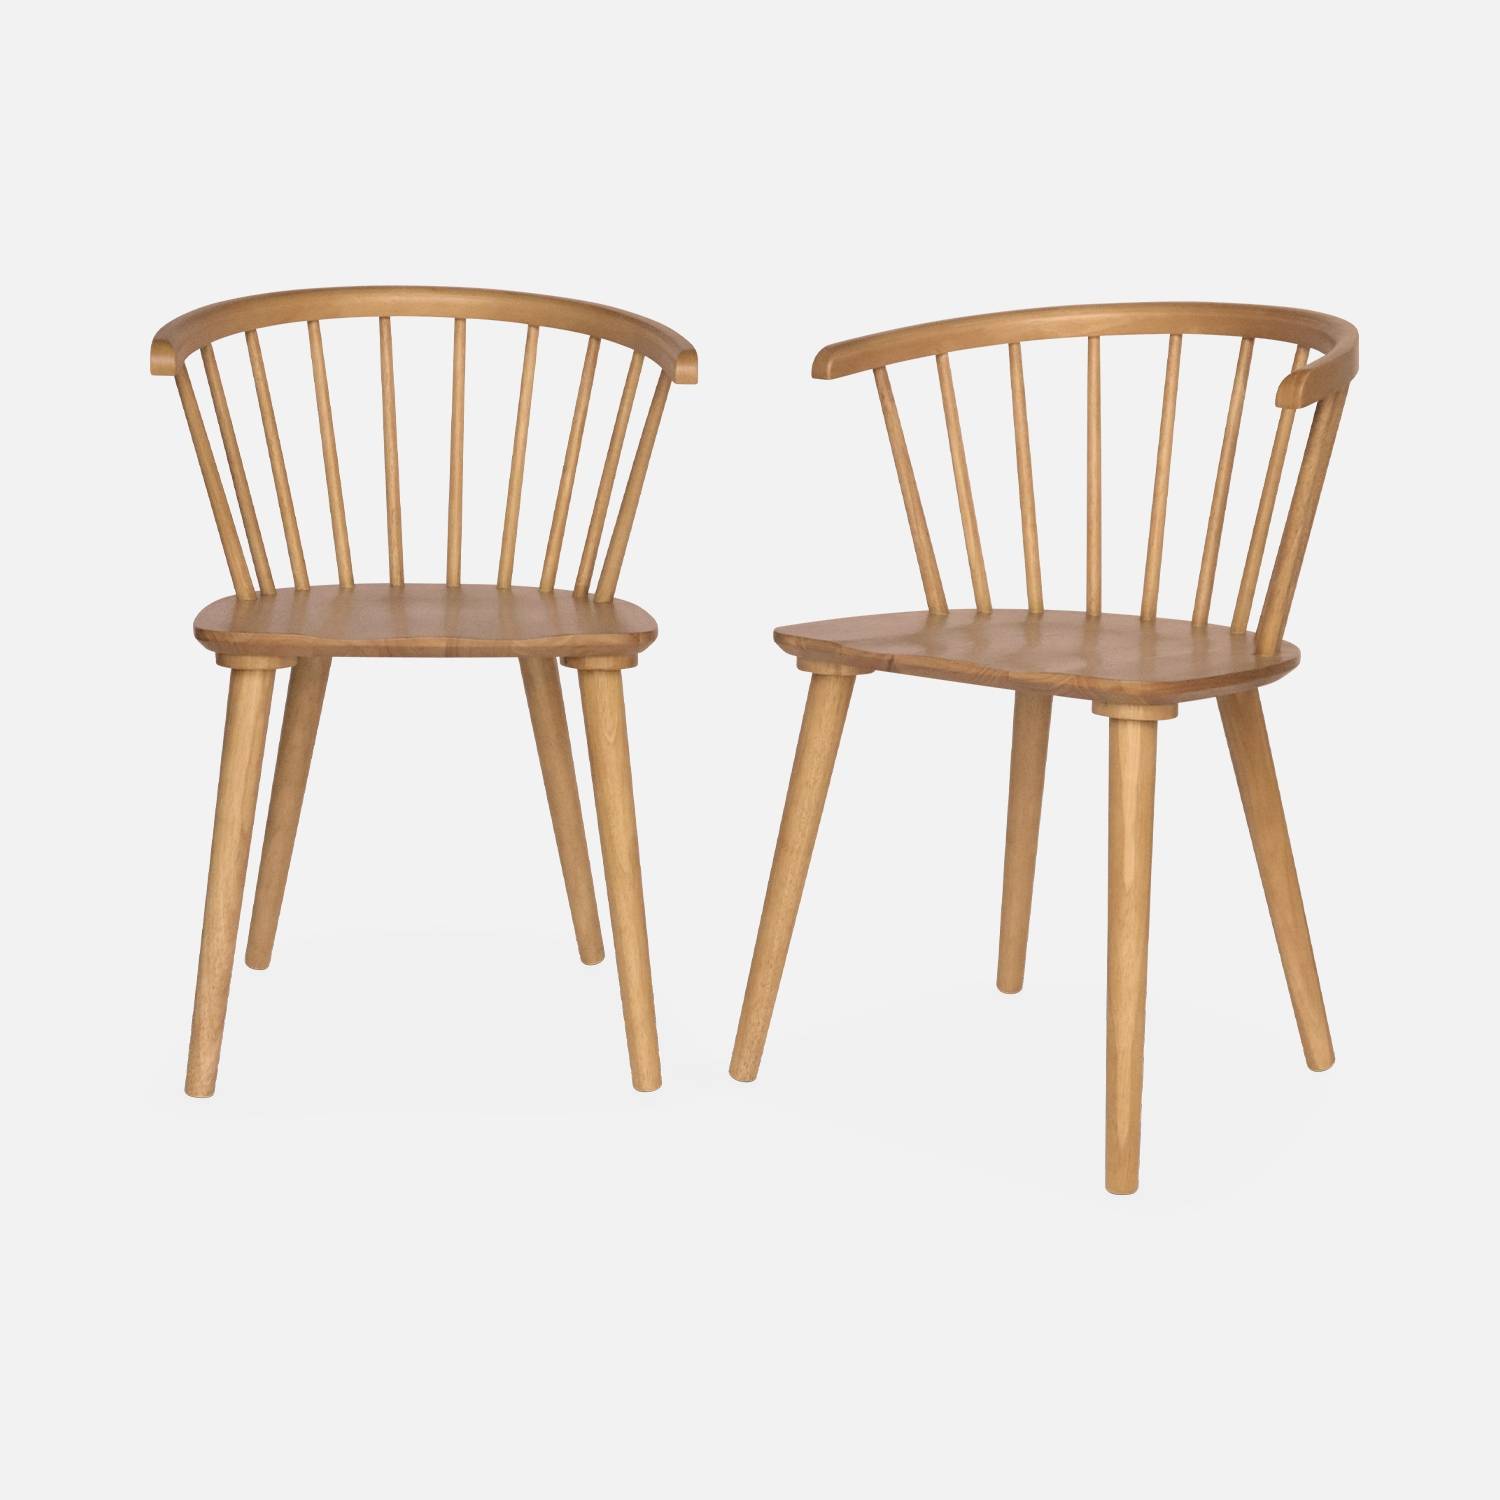 Set von 2 naturfarbenen Stühlen mit Sprossen aus Holz und Sperrholz